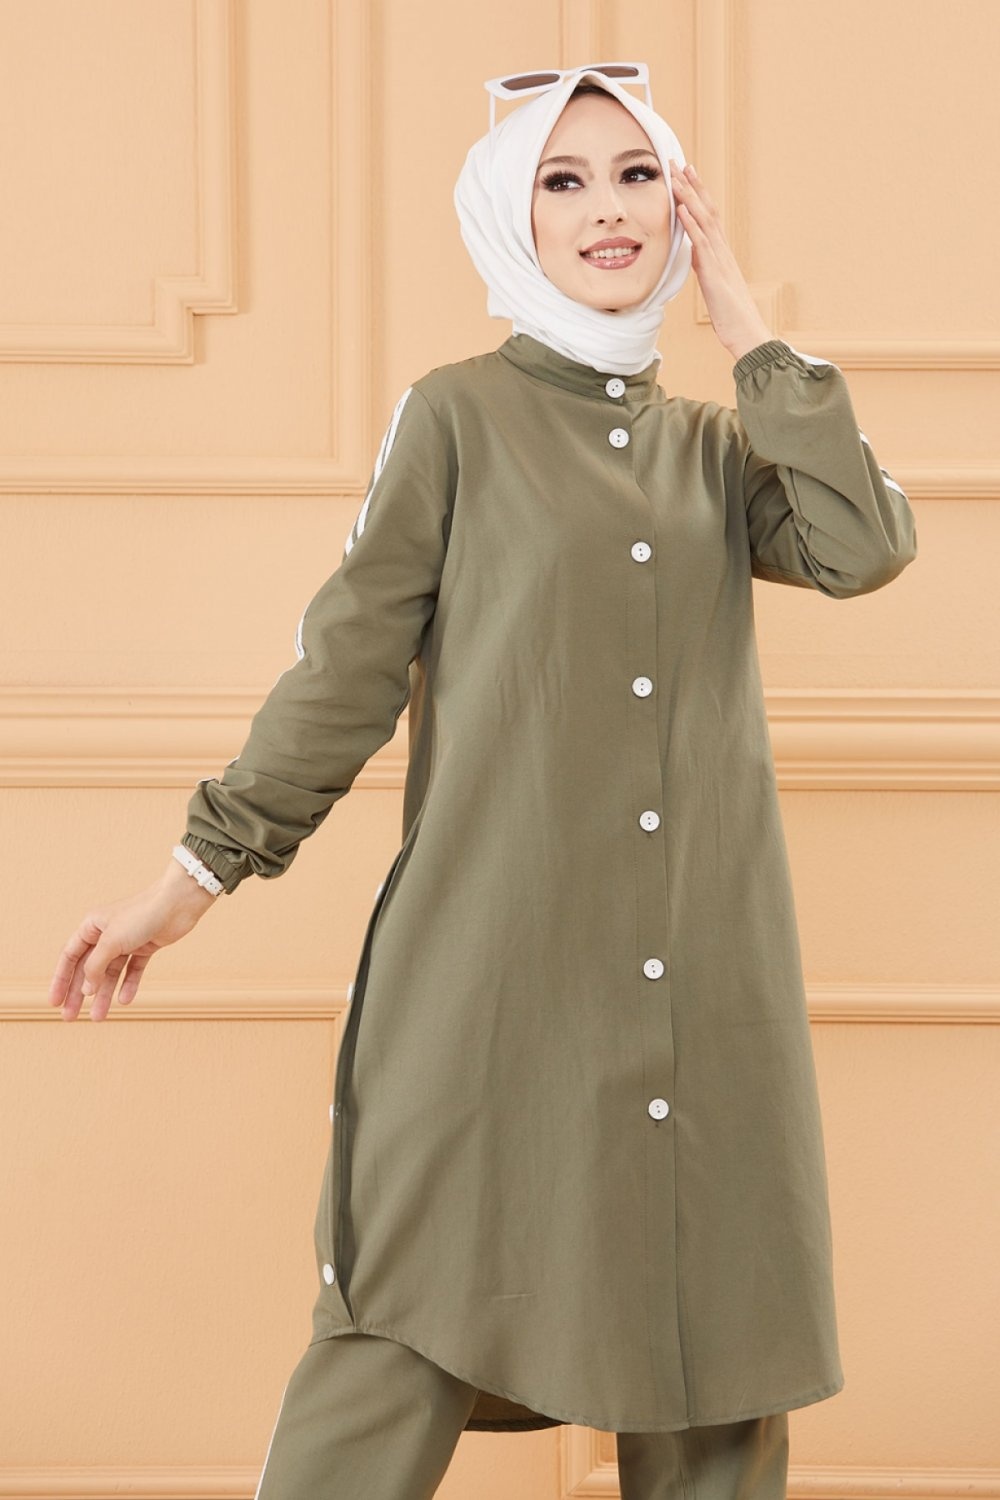 Ensemble casual : Tunique boutonnée -chemise longue- et son pantalon  (Vêtement Hijab moderne pour femme voilée) - Couleur kaki